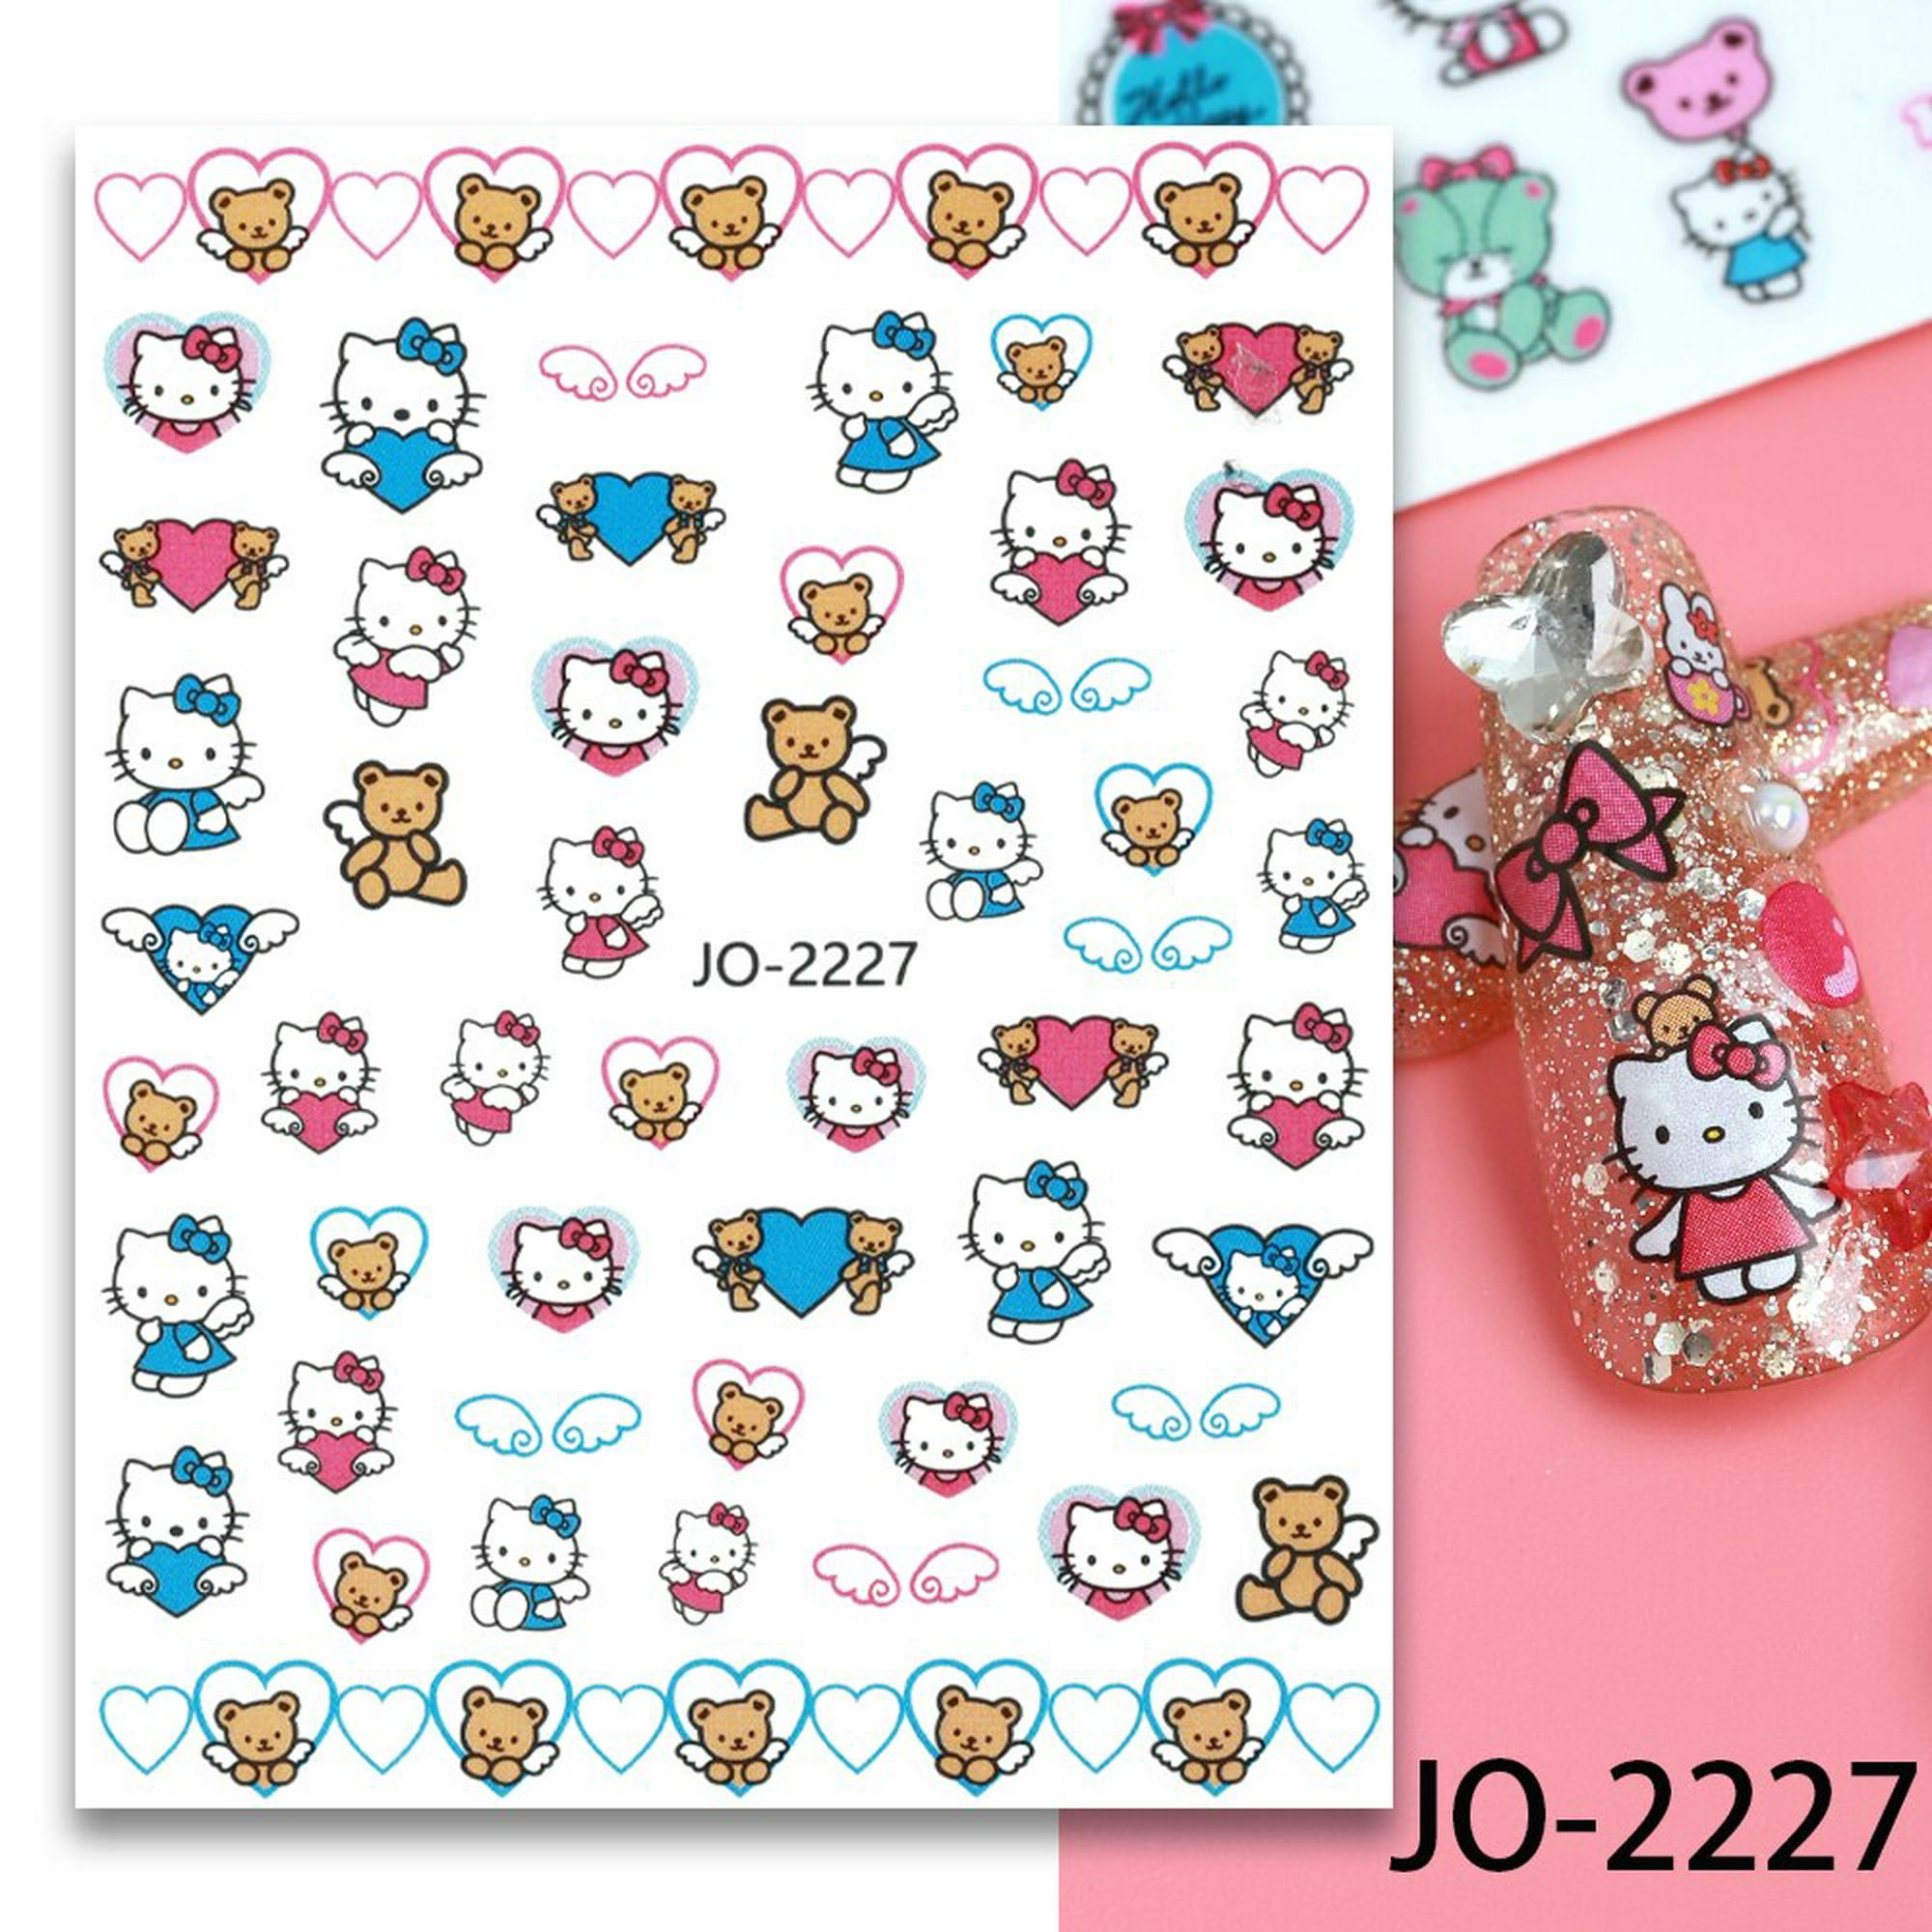 Stickers Pegatinas Hello Kitty, Decoracion Uñas Acrilicas